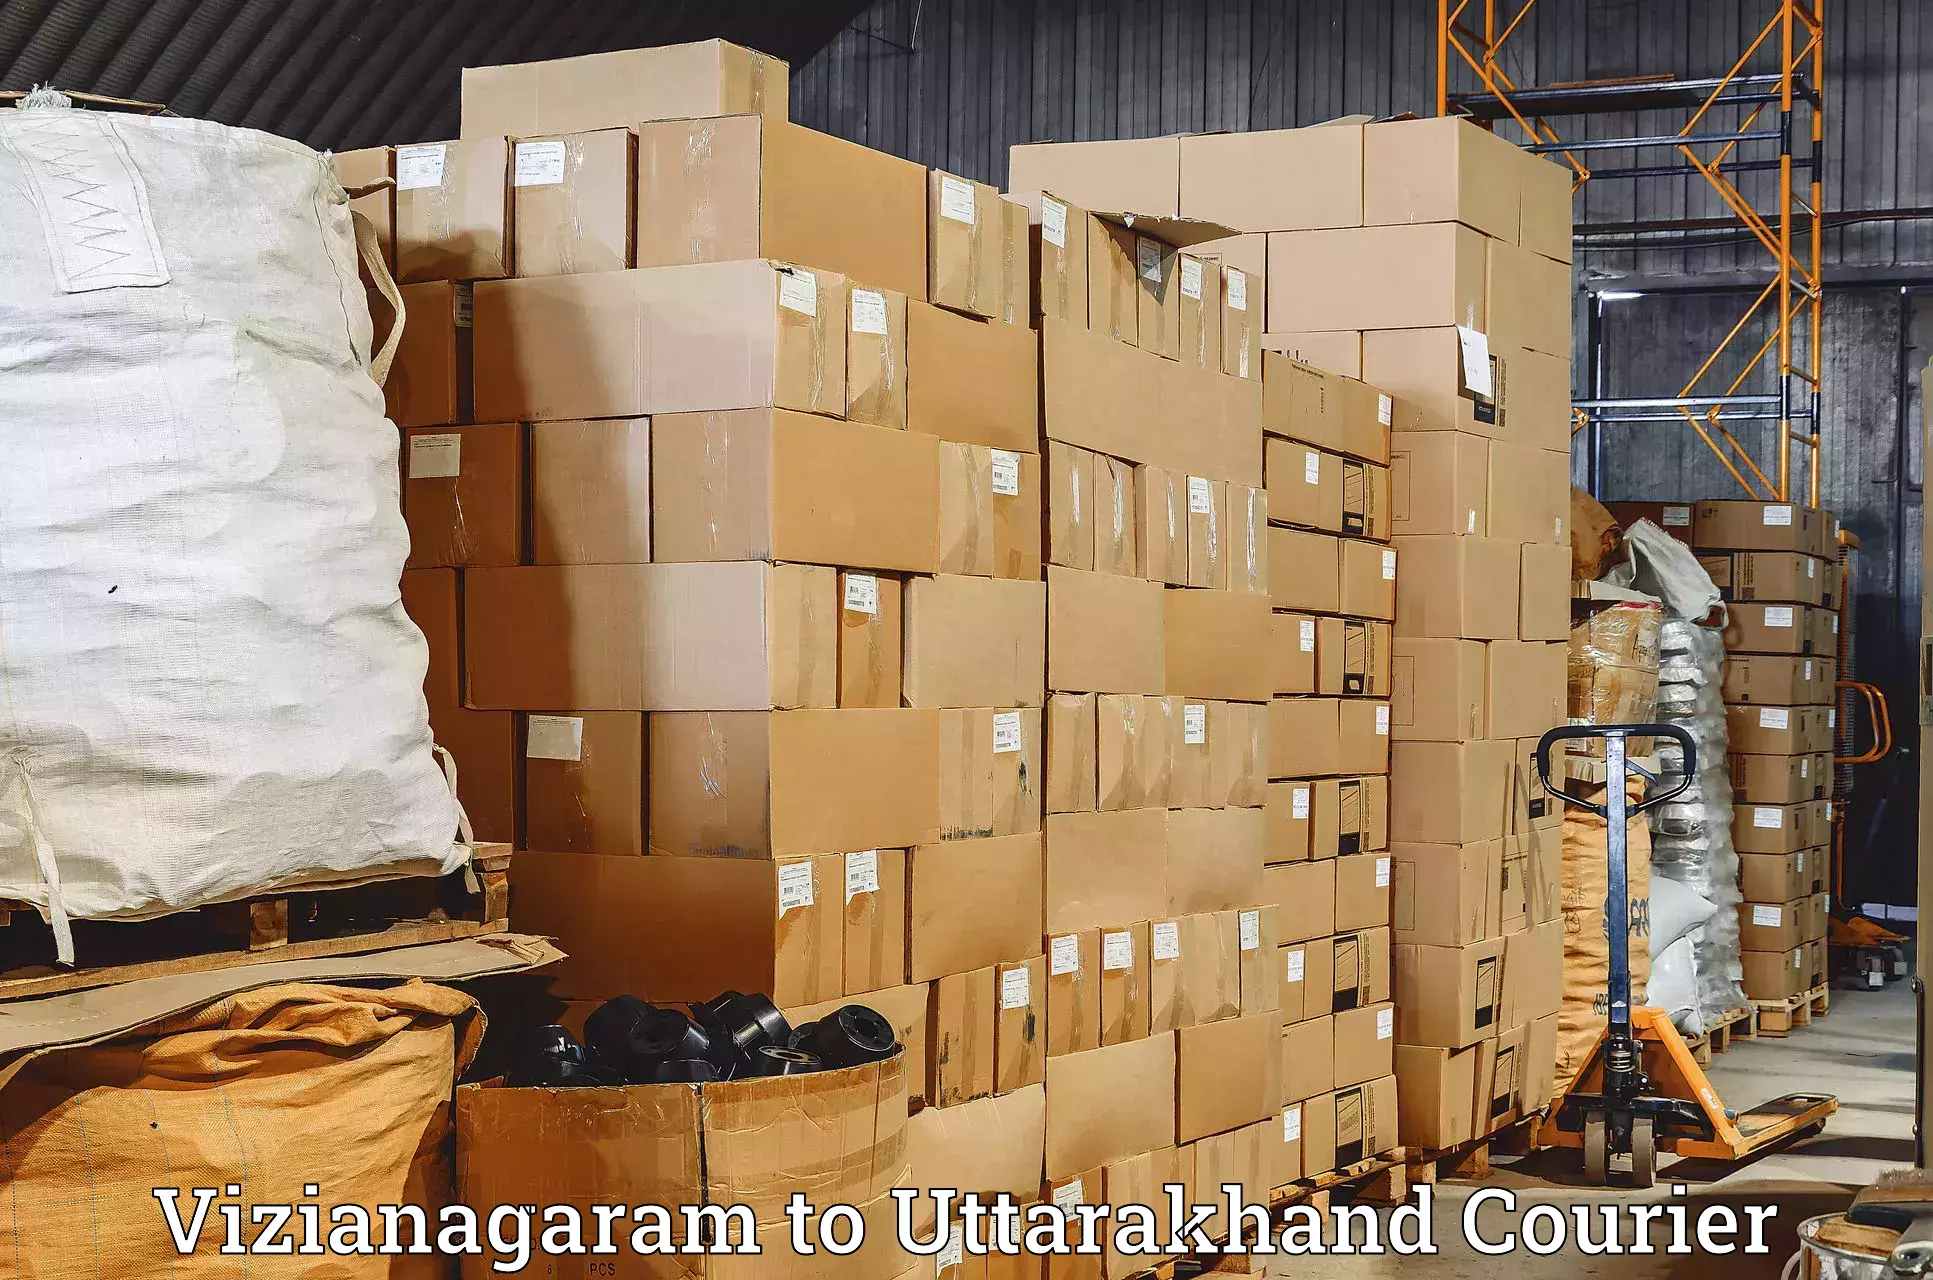 Next-generation courier services Vizianagaram to Bageshwar